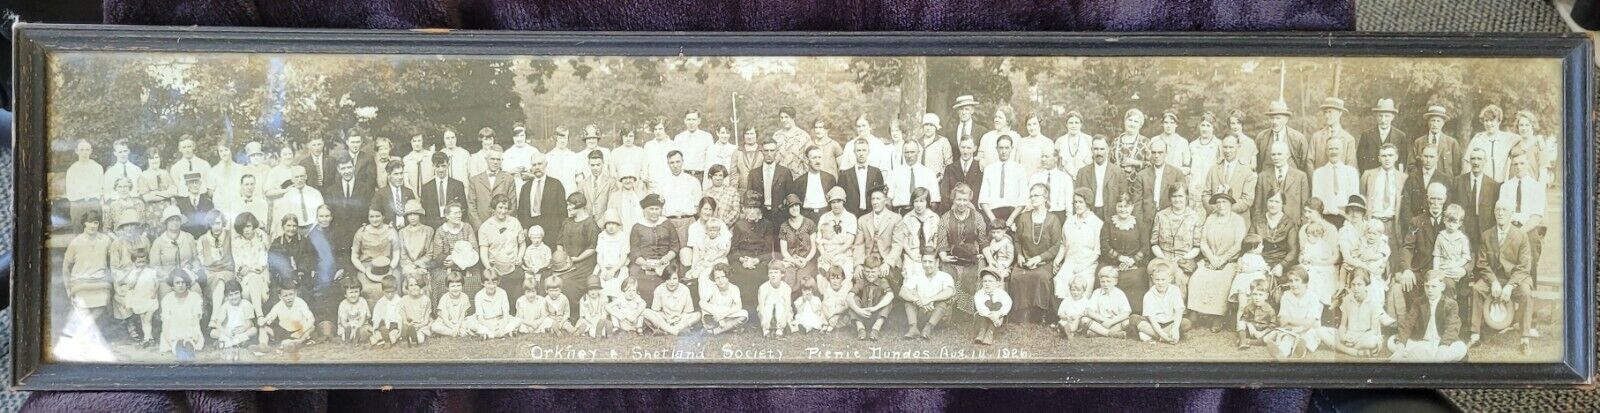 1926 Group photo of Scottish Dundas picnic, Orkney and Shetland Society